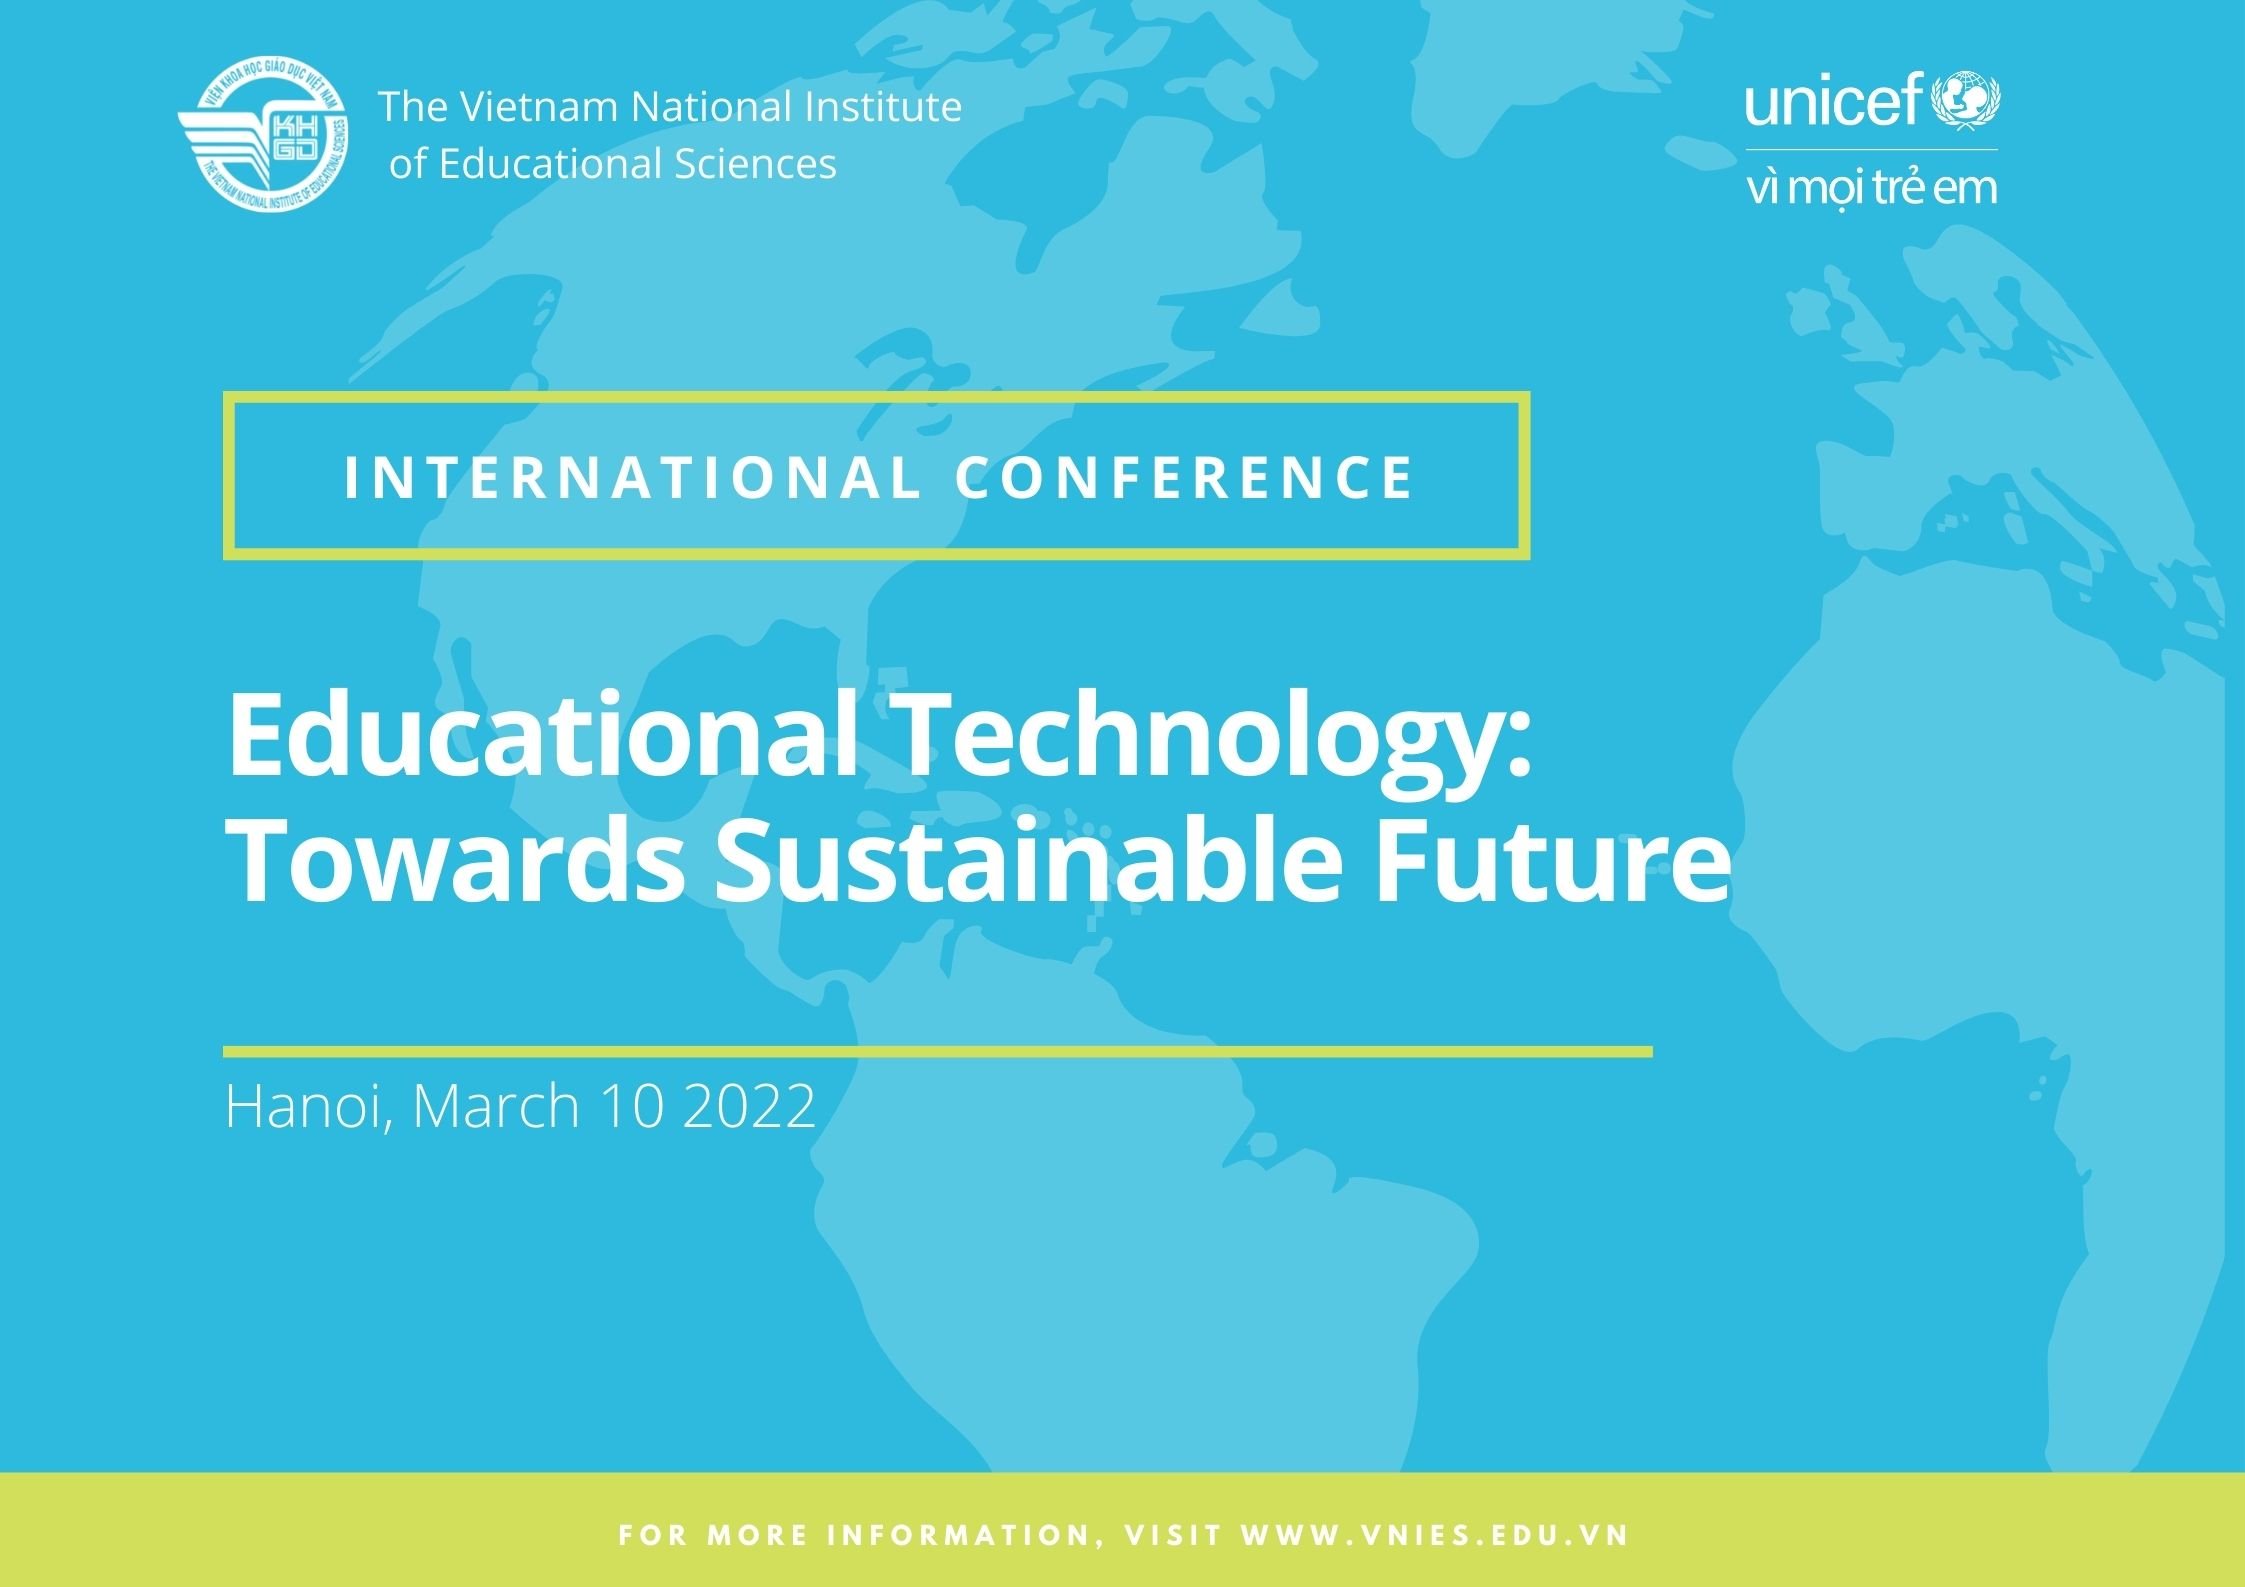 Thông báo Hội thảo Công nghệ giáo dục - Hướng tới tương lai bền vững